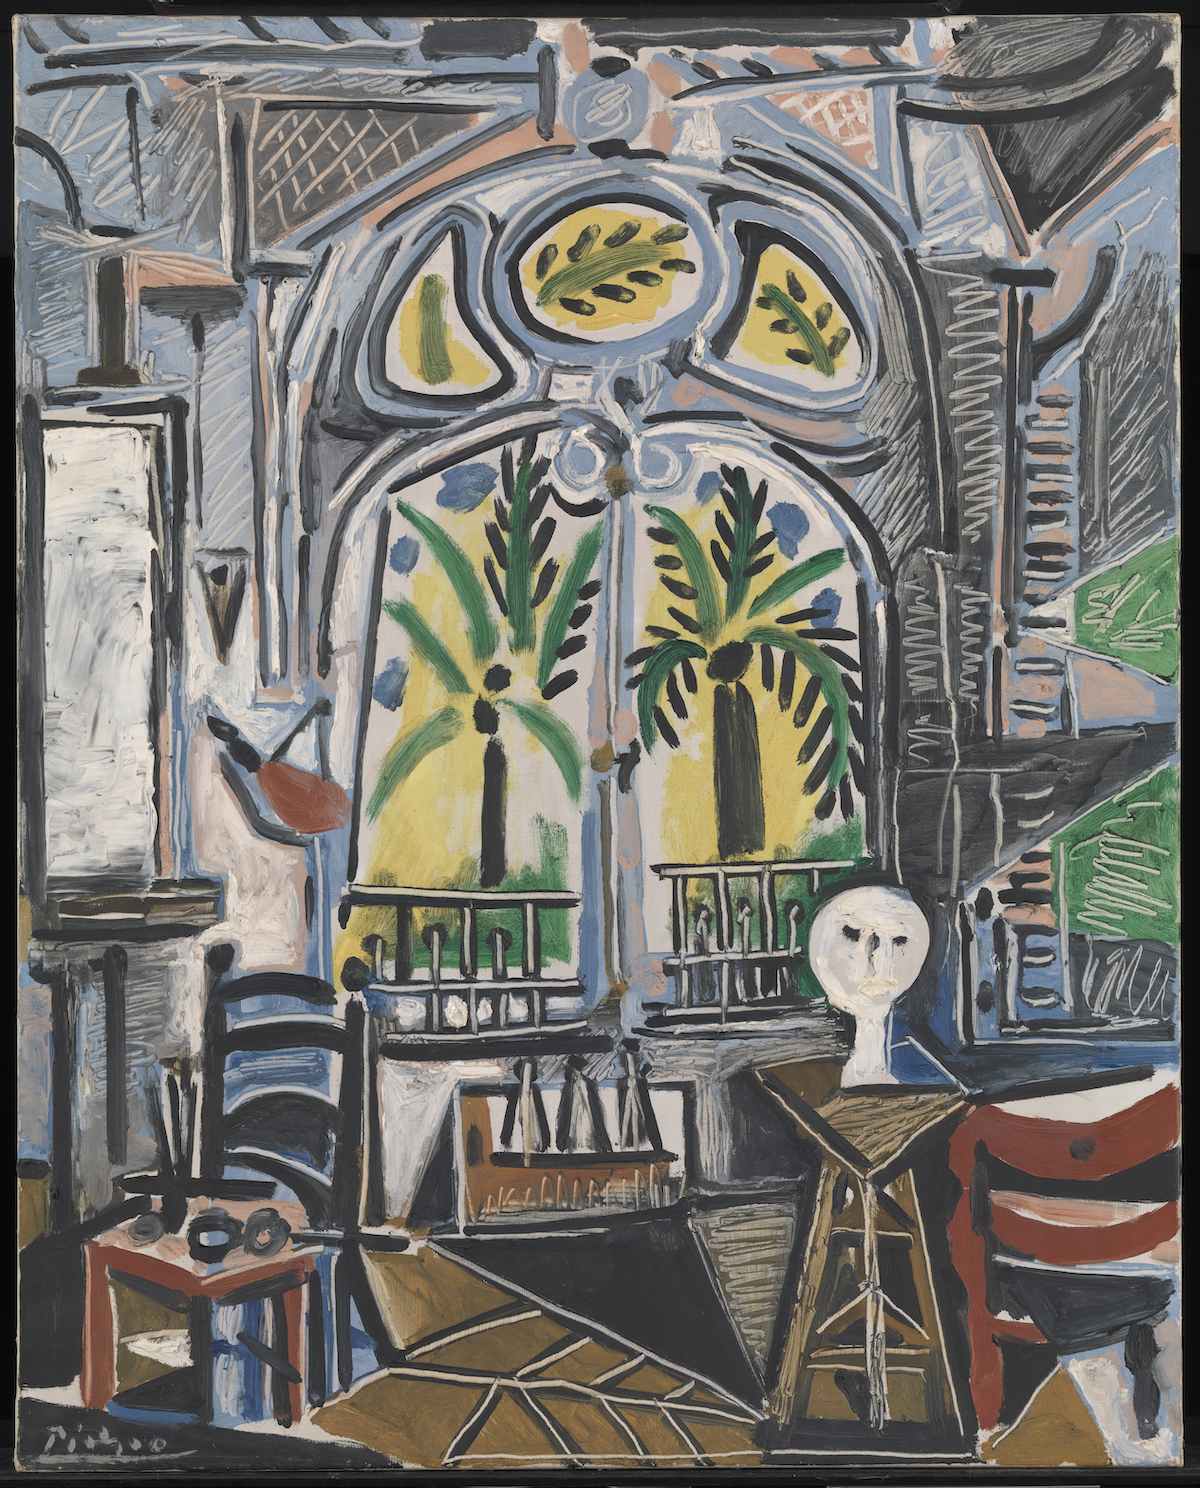 The Wick - Pablo Picasso, L'Atelier (The Studio), 1955
© Succession Picasso/DACS, London, 2021